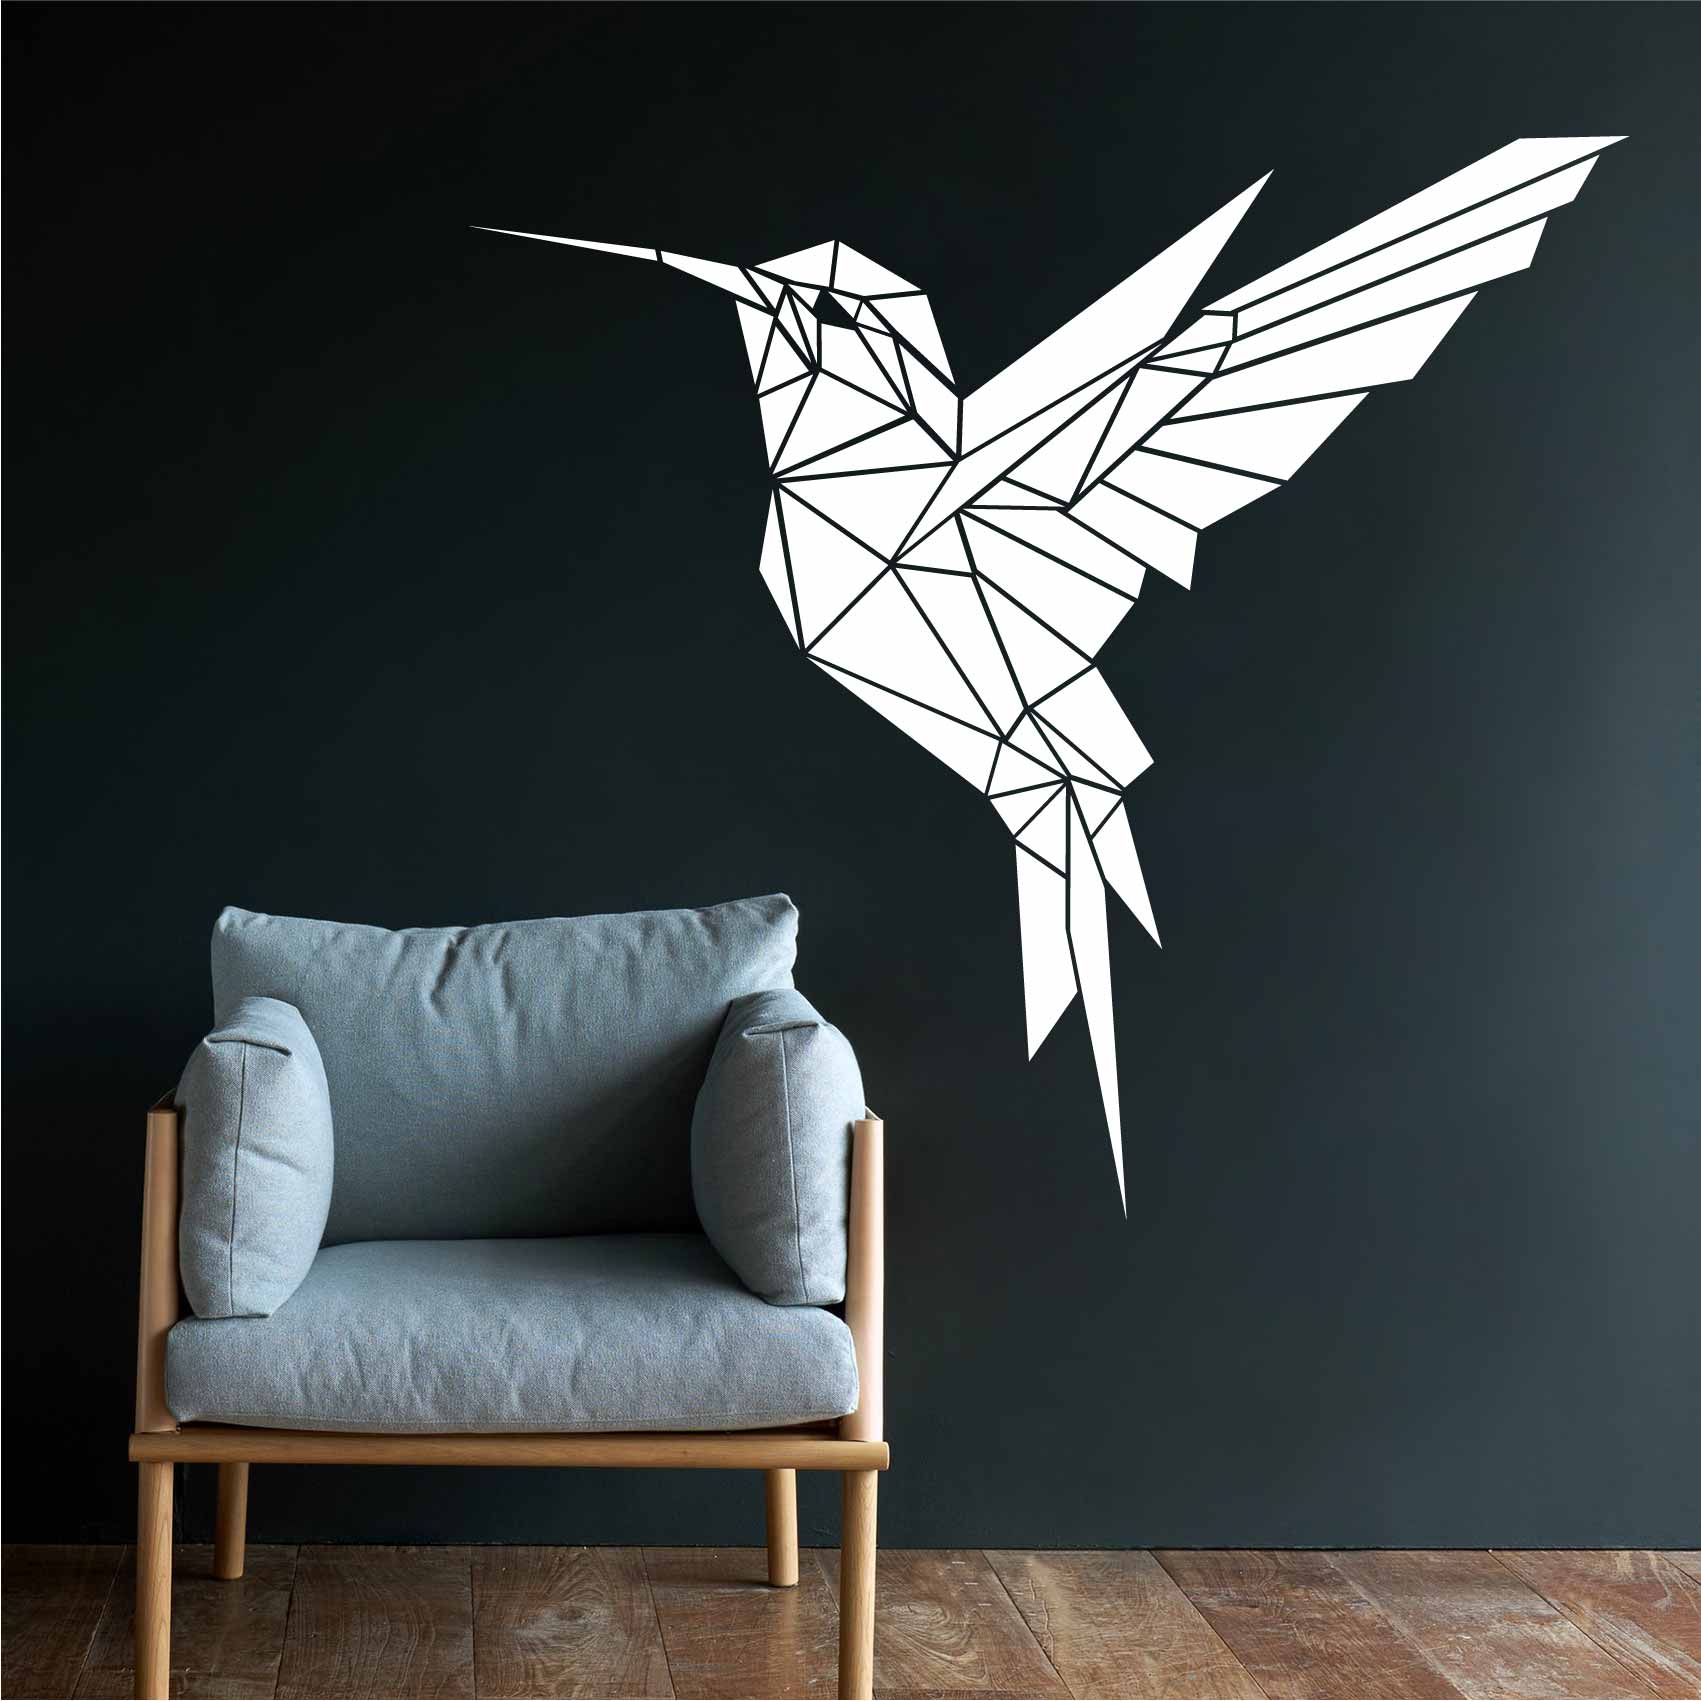 stickers-colibri-origami-inverse-ref29oiseaux-stickers-muraux-origami-autocollant-deco-salon-chambre-sticker-mural-origami-decoration